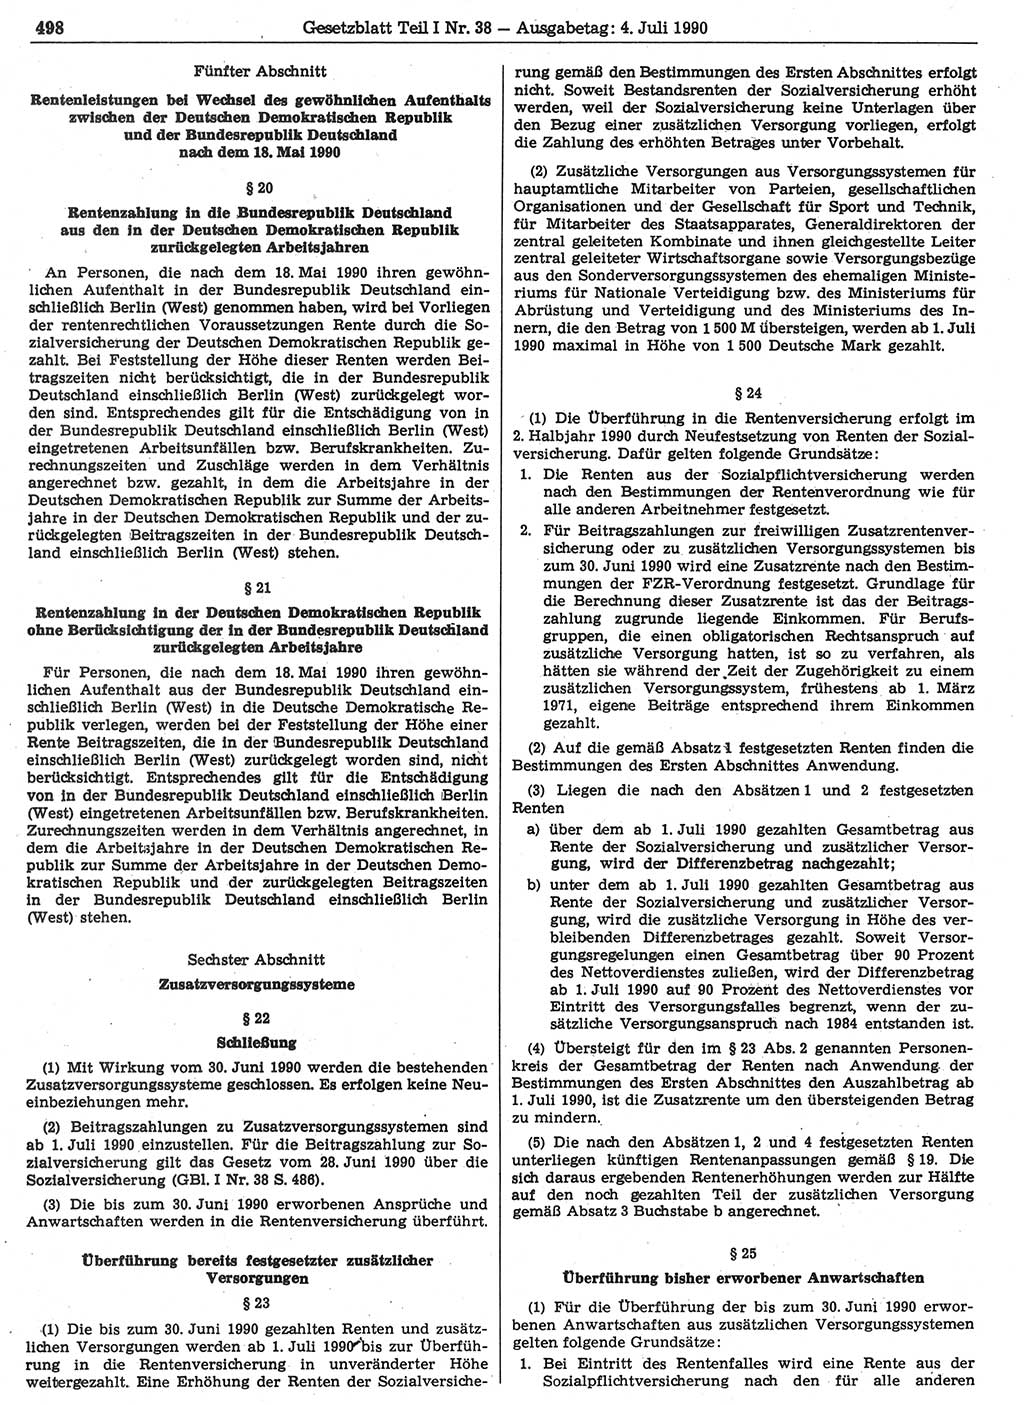 Gesetzblatt (GBl.) der Deutschen Demokratischen Republik (DDR) Teil Ⅰ 1990, Seite 498 (GBl. DDR Ⅰ 1990, S. 498)